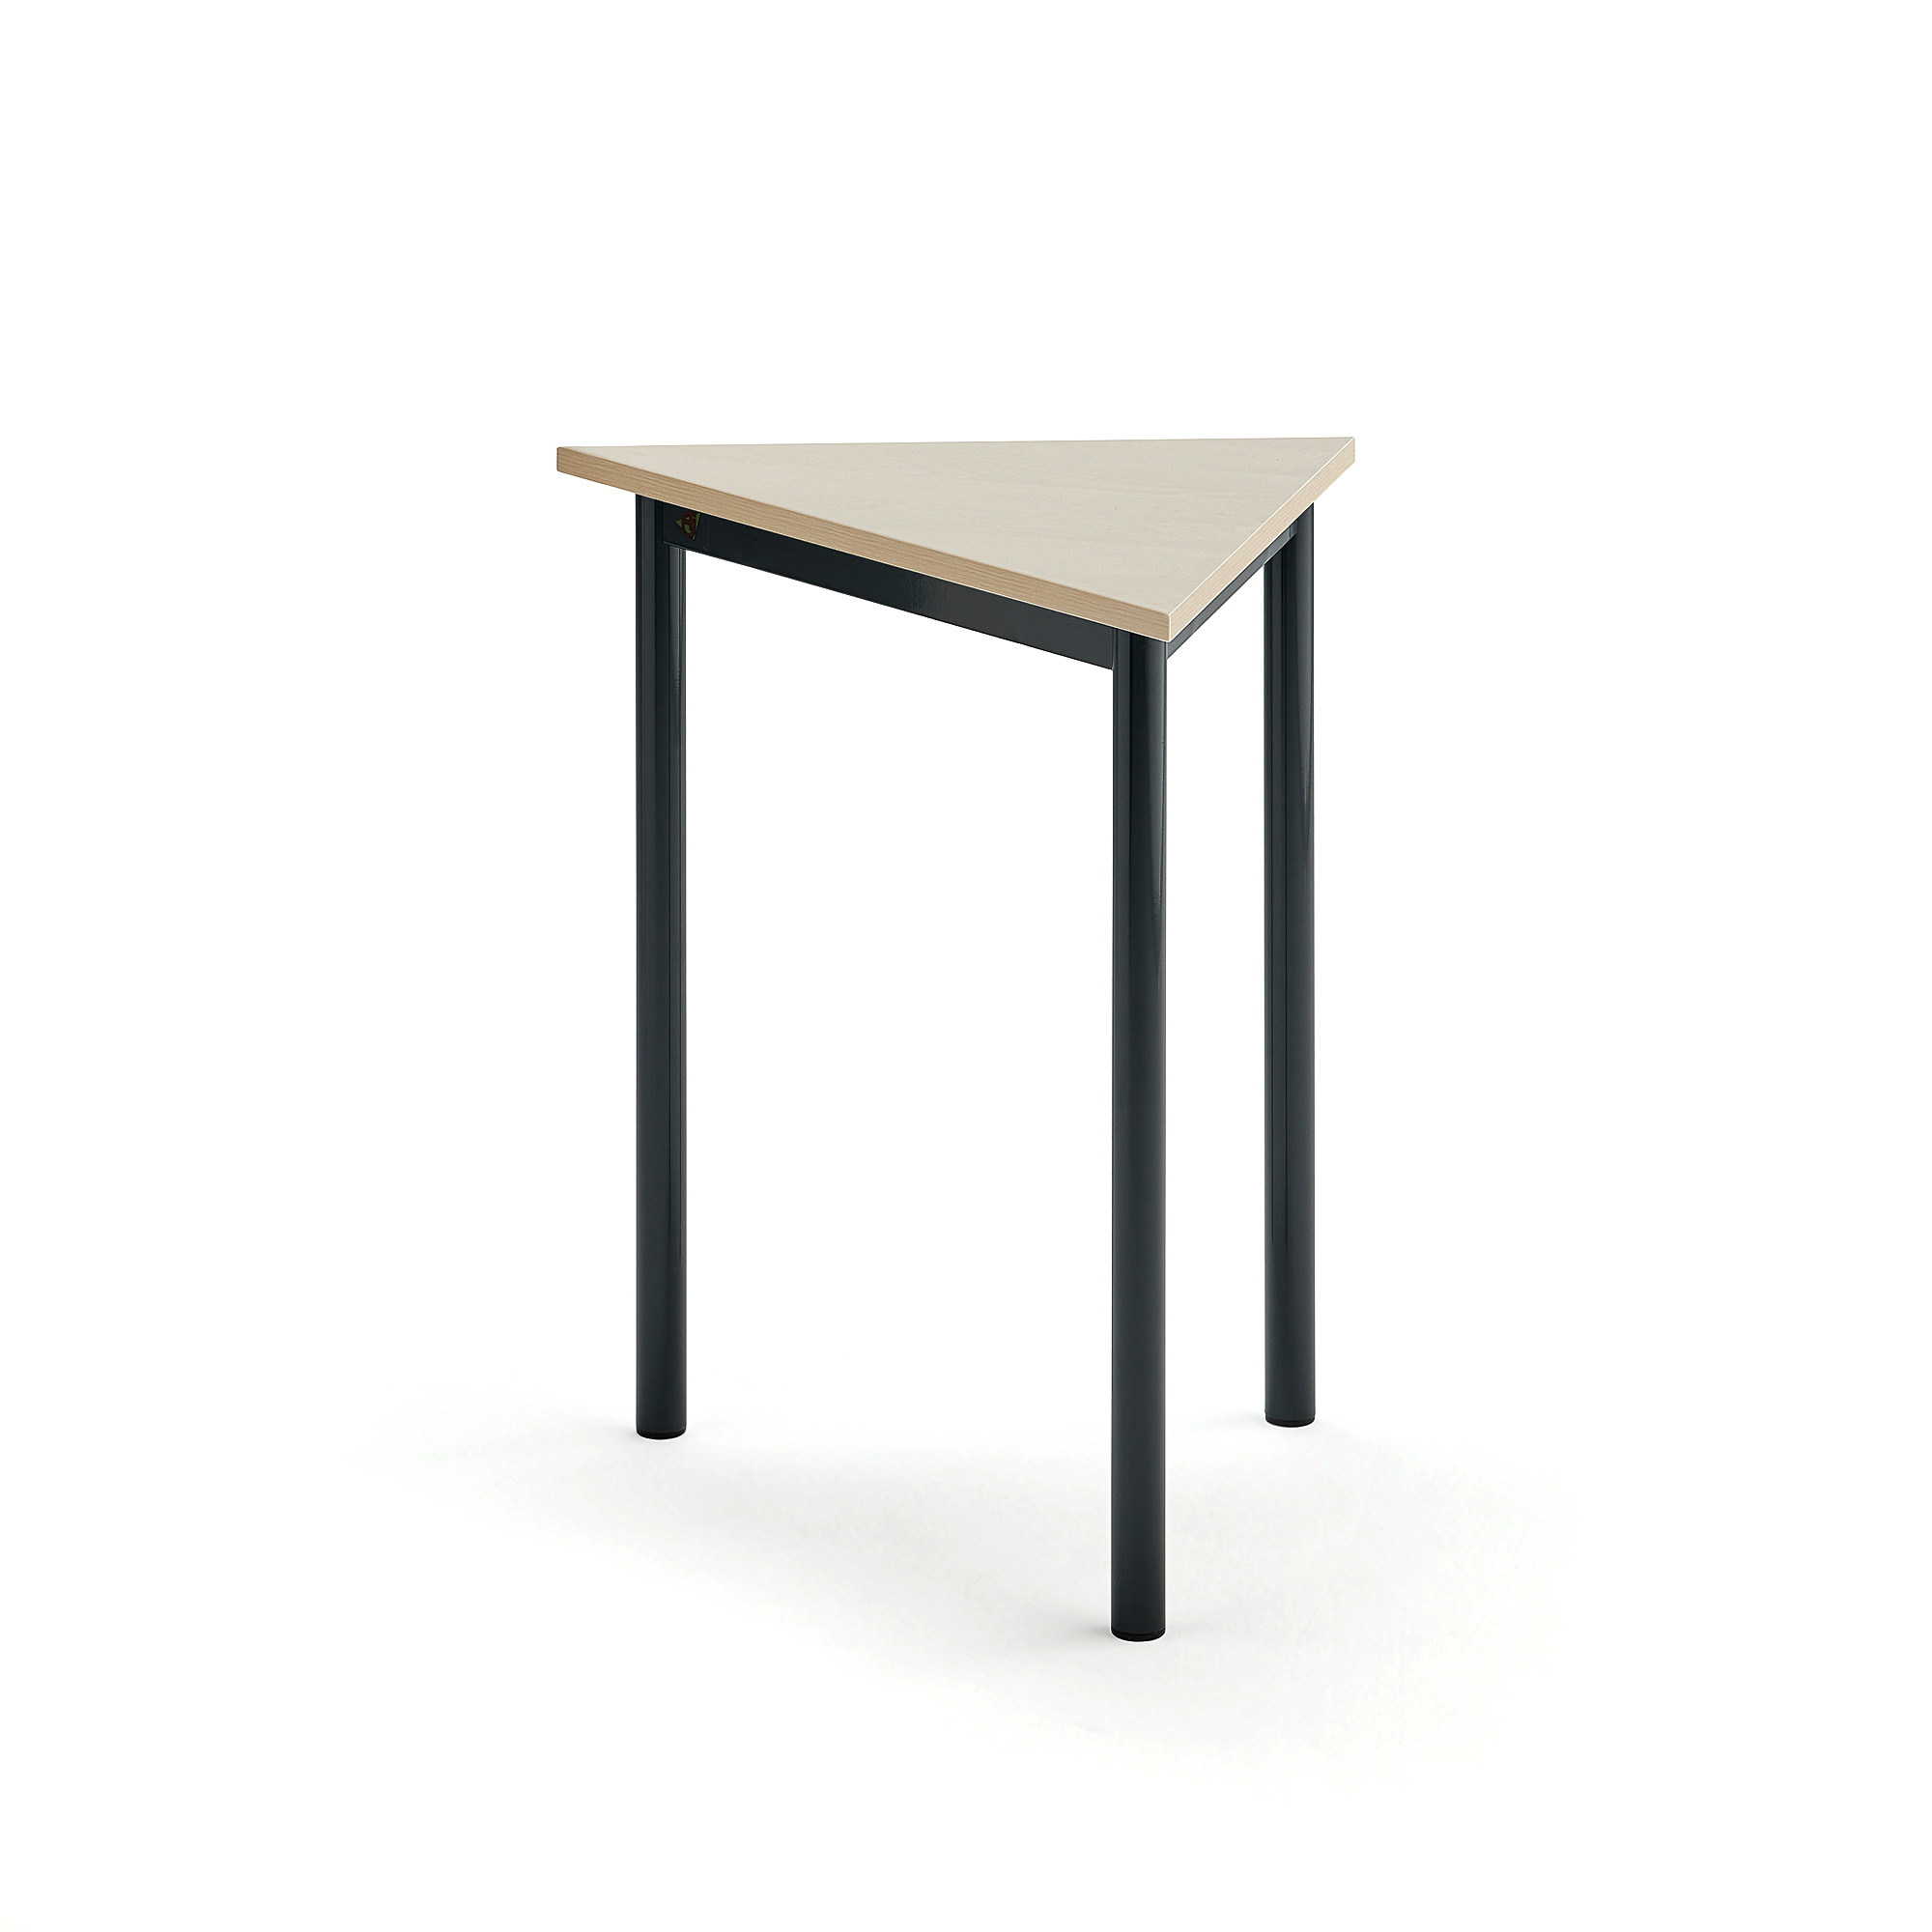 Stůl SONITUS TRIANGEL, 700x600x720 mm, antracitově šedé nohy, HPL deska tlumící hluk, bříza